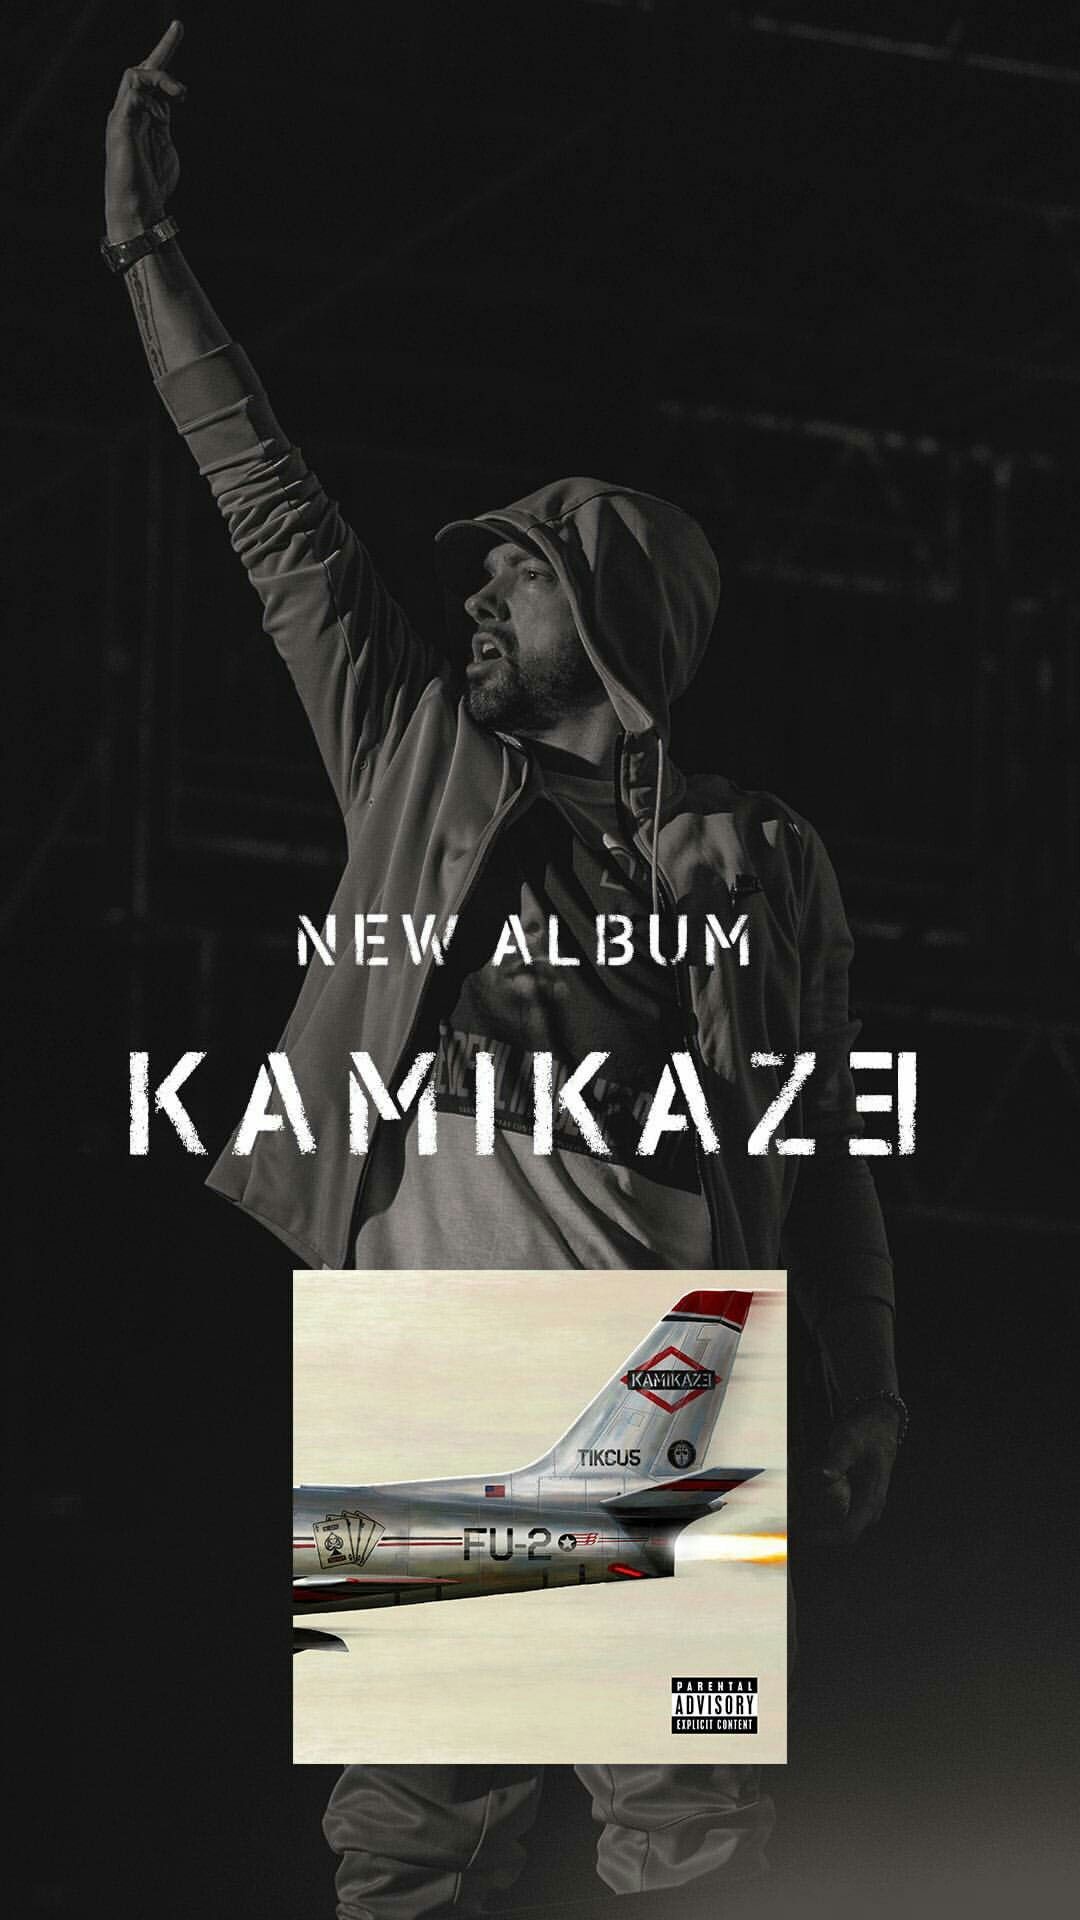 kamikaze wallpaper,póster,avión,fuente,aerolínea,fotografía